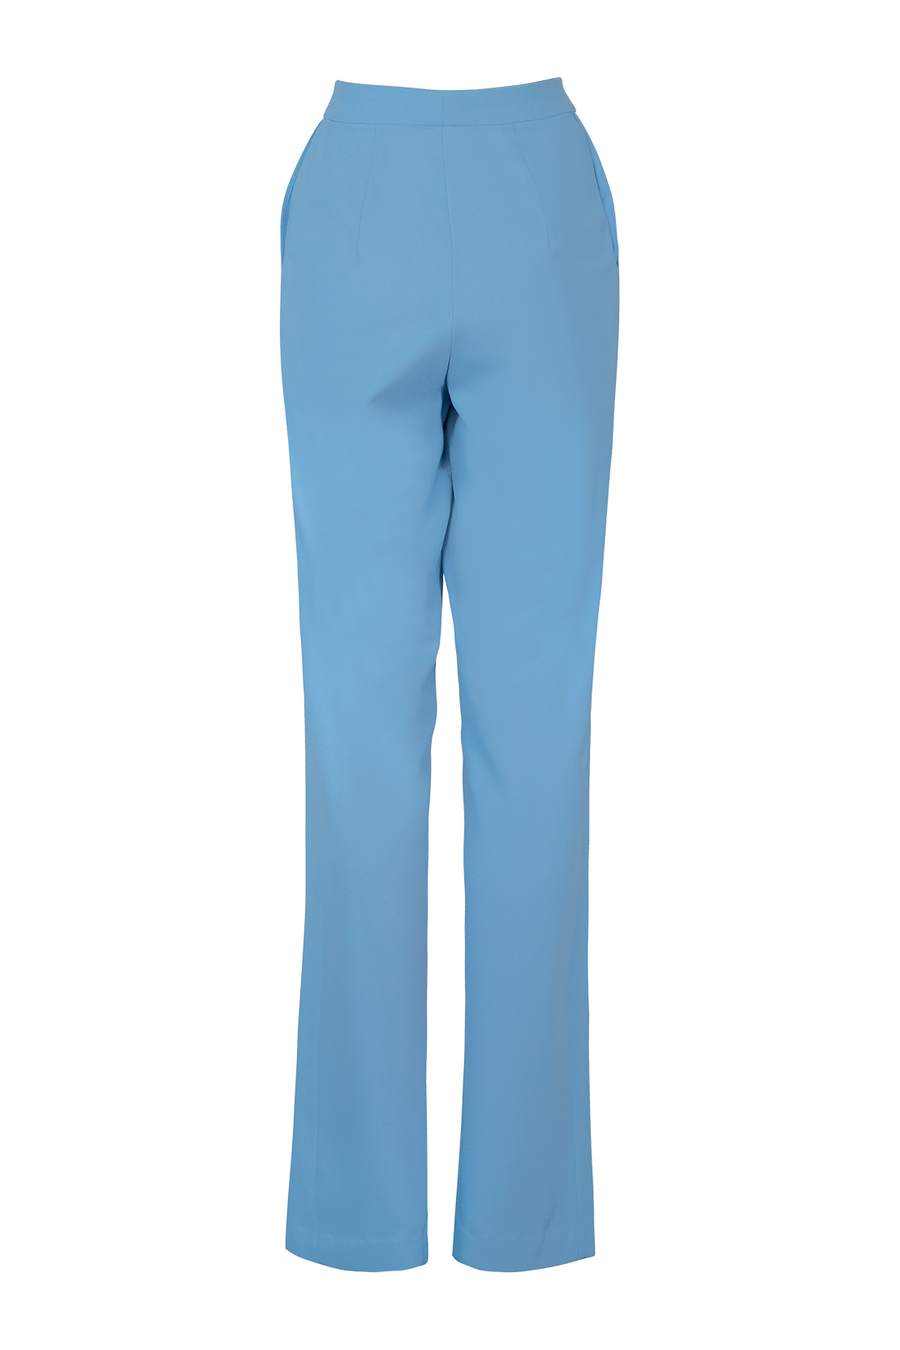 Blue Bird Suit/Pant